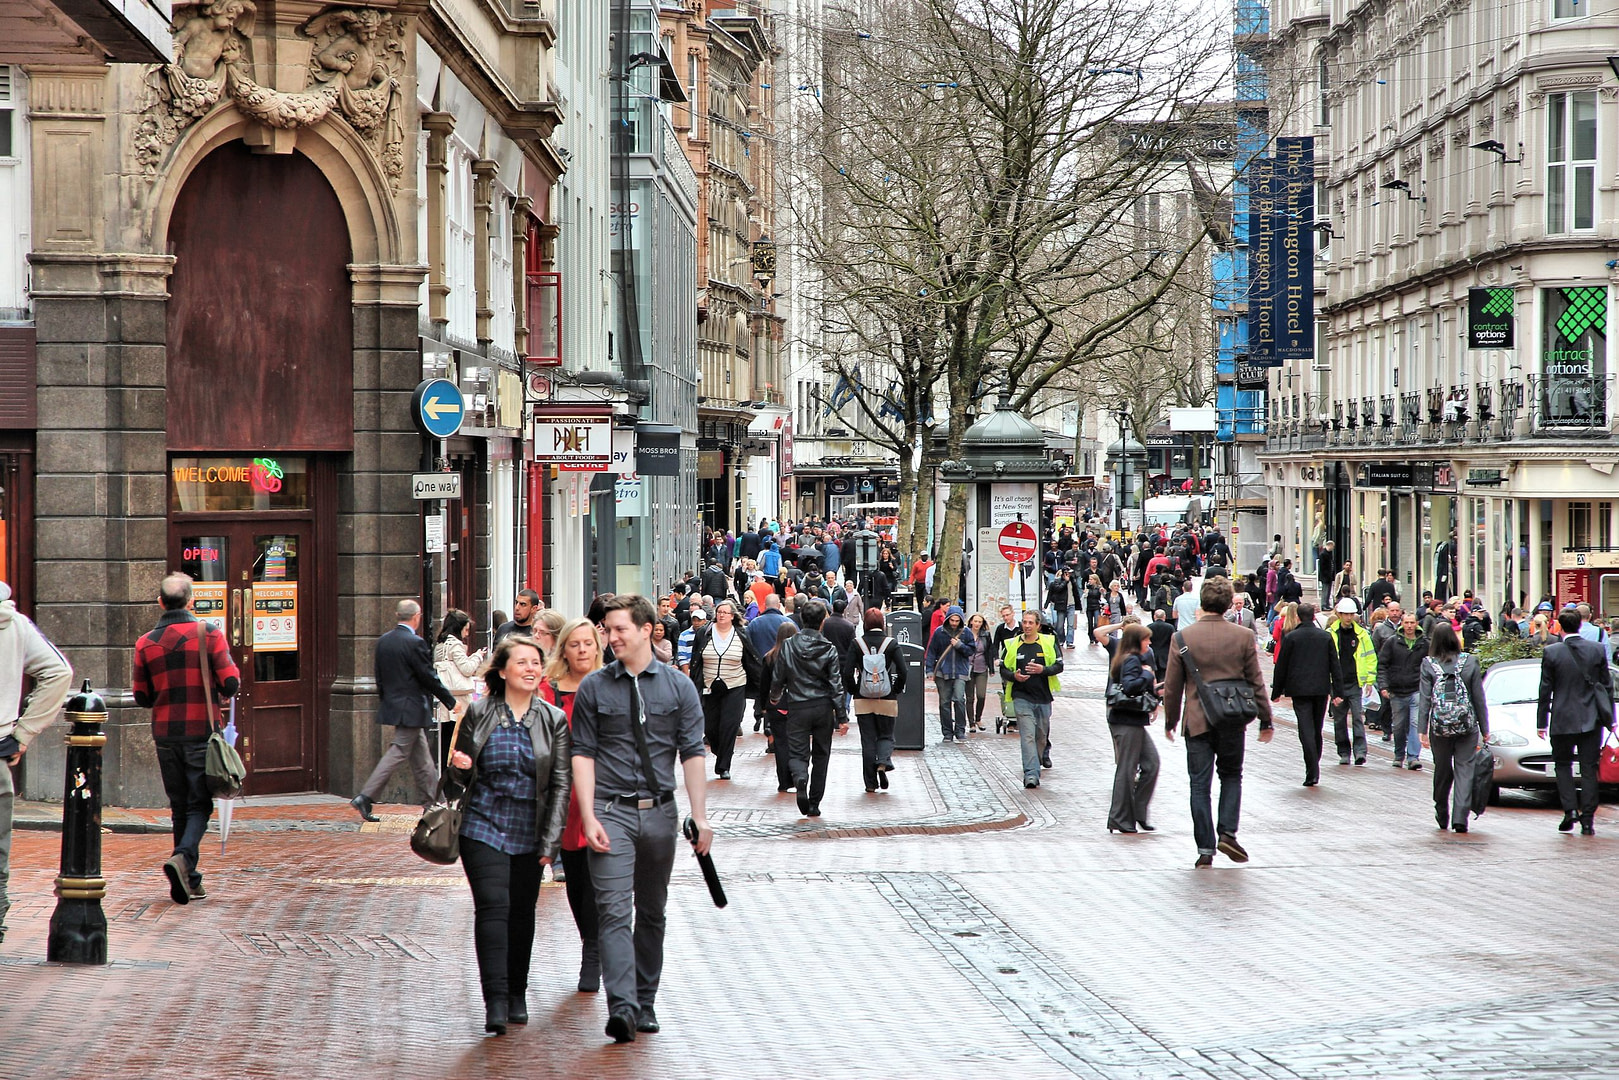 Five Ways Birmingham Employment